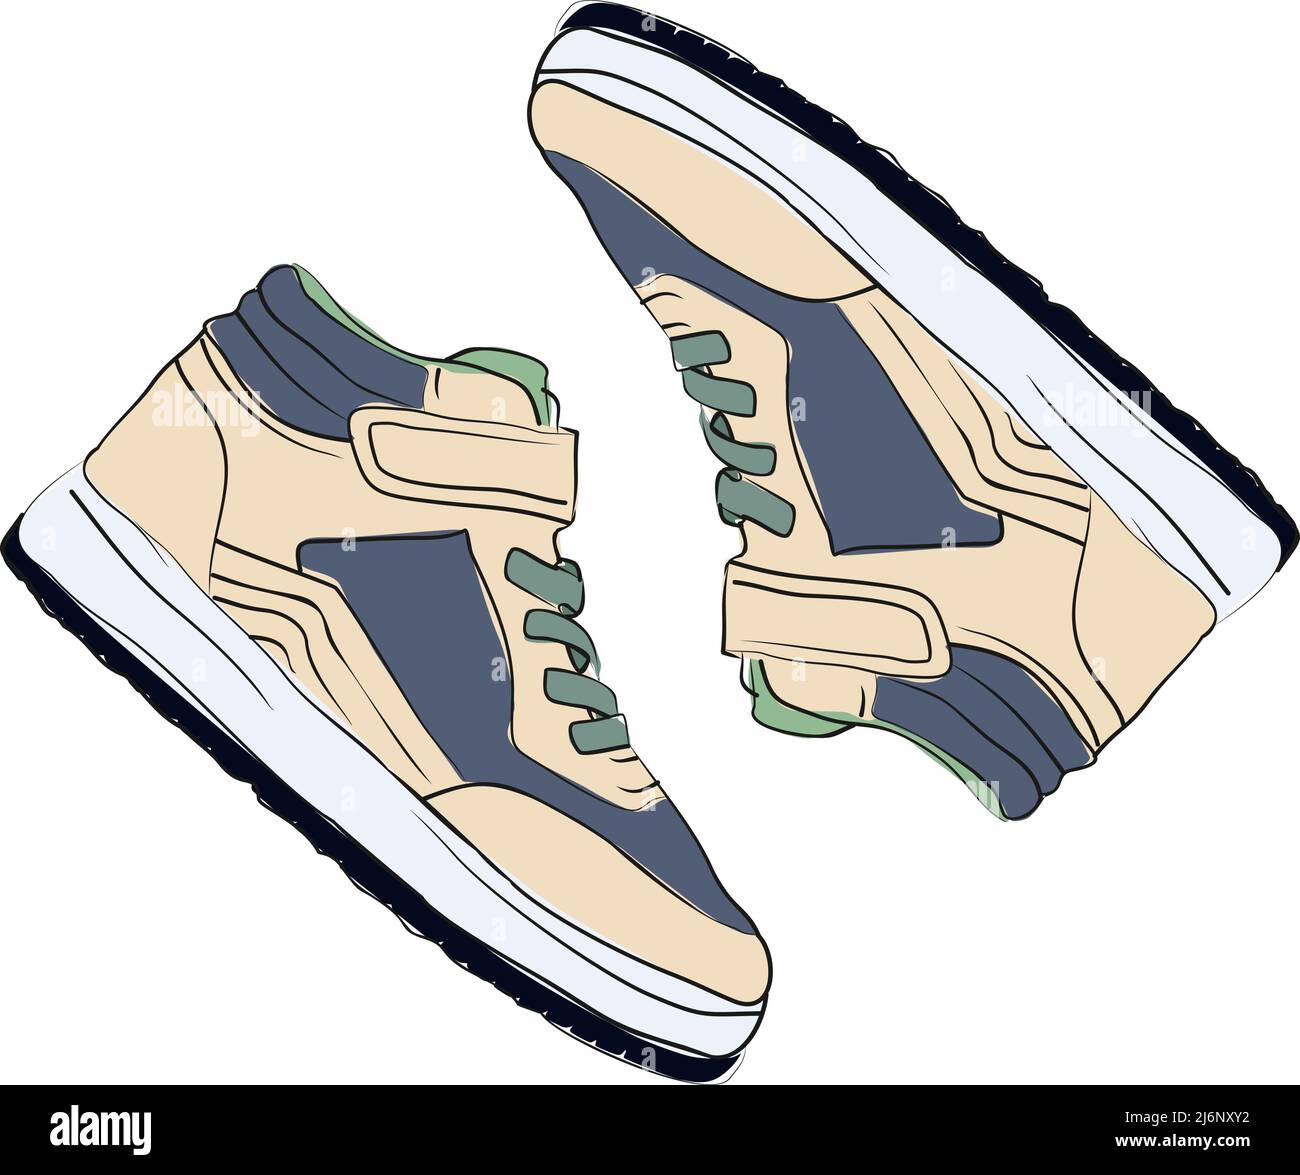 Illustrazione delle sneakers di moda di colore chiaro, sneaker con vista dall'alto, design piatto, scarpe da disegno Sketch Concept, scarpe sportive di colore grigio, verde e pelle Illustrazione Vettoriale